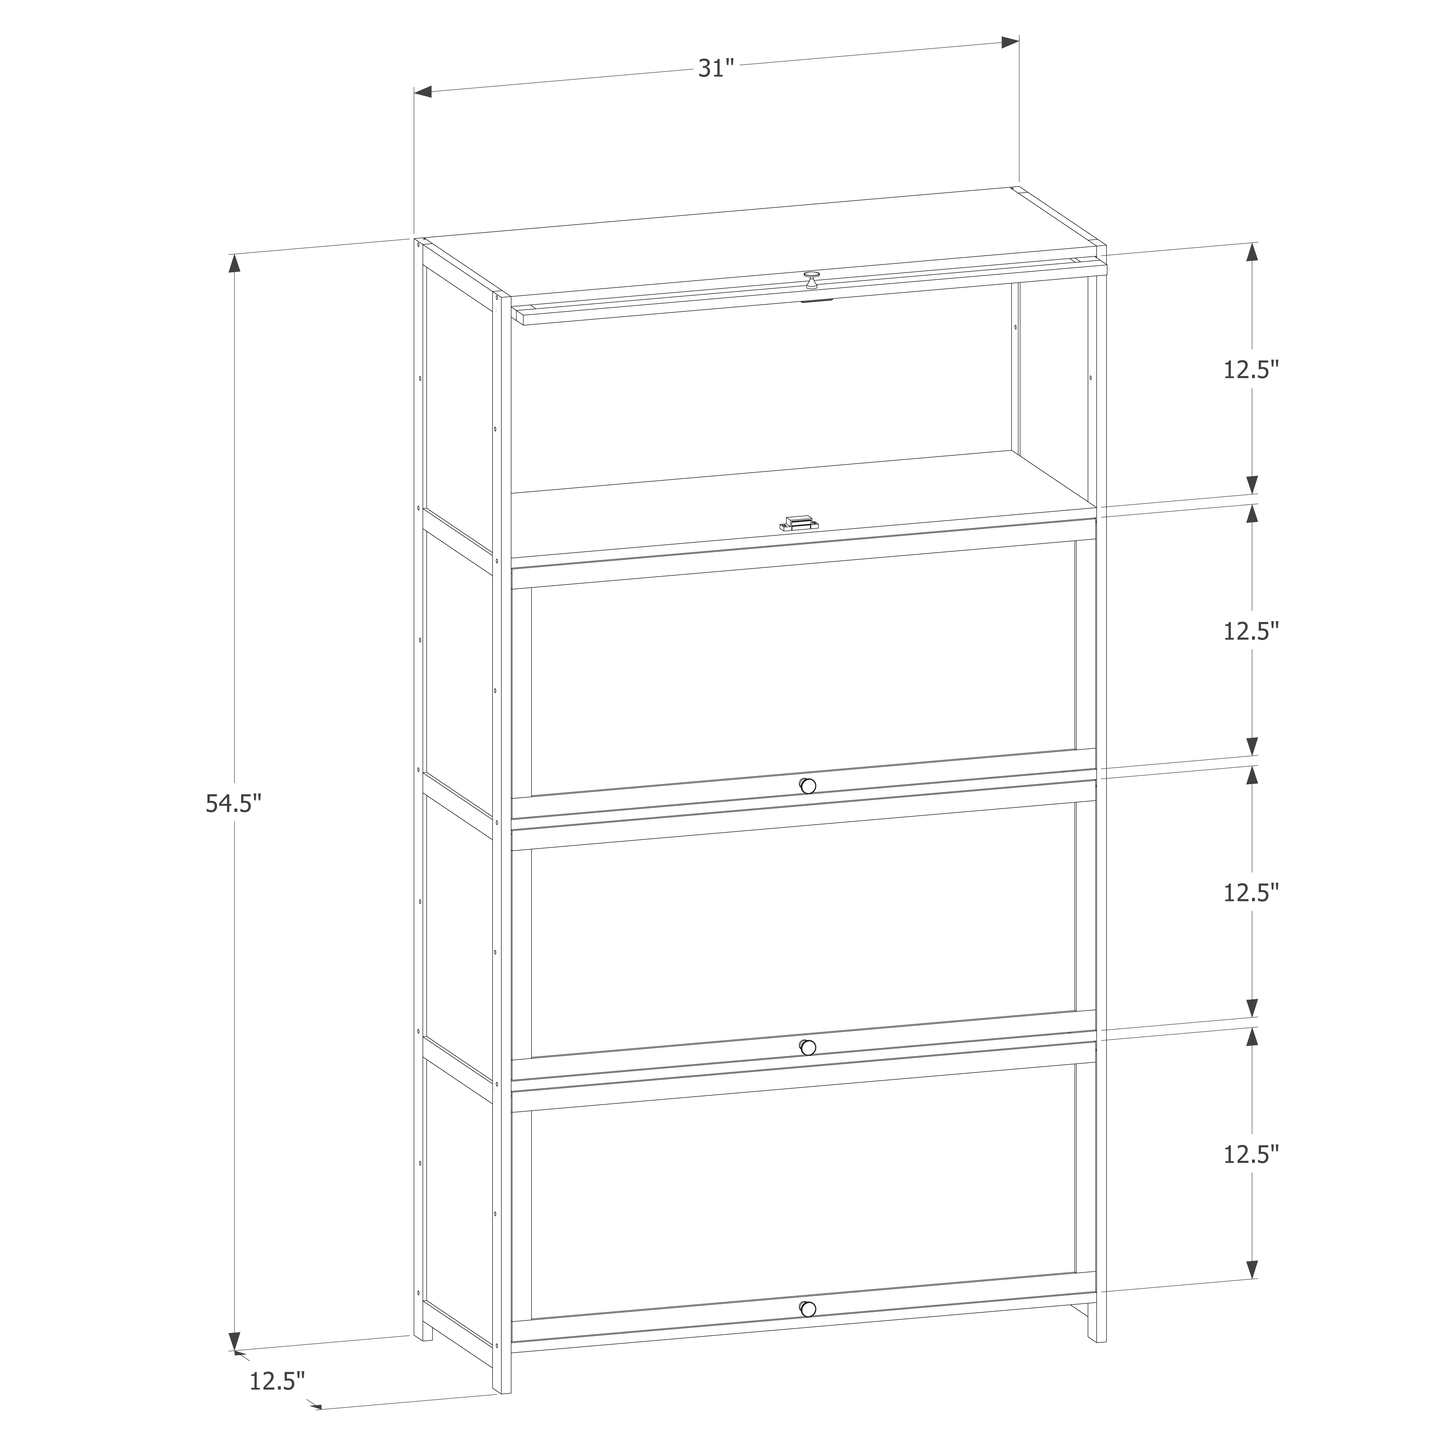 Slide Up Acrylic Panel Door Multi-Functional Storage Cabinet - 4 Tier - Brown